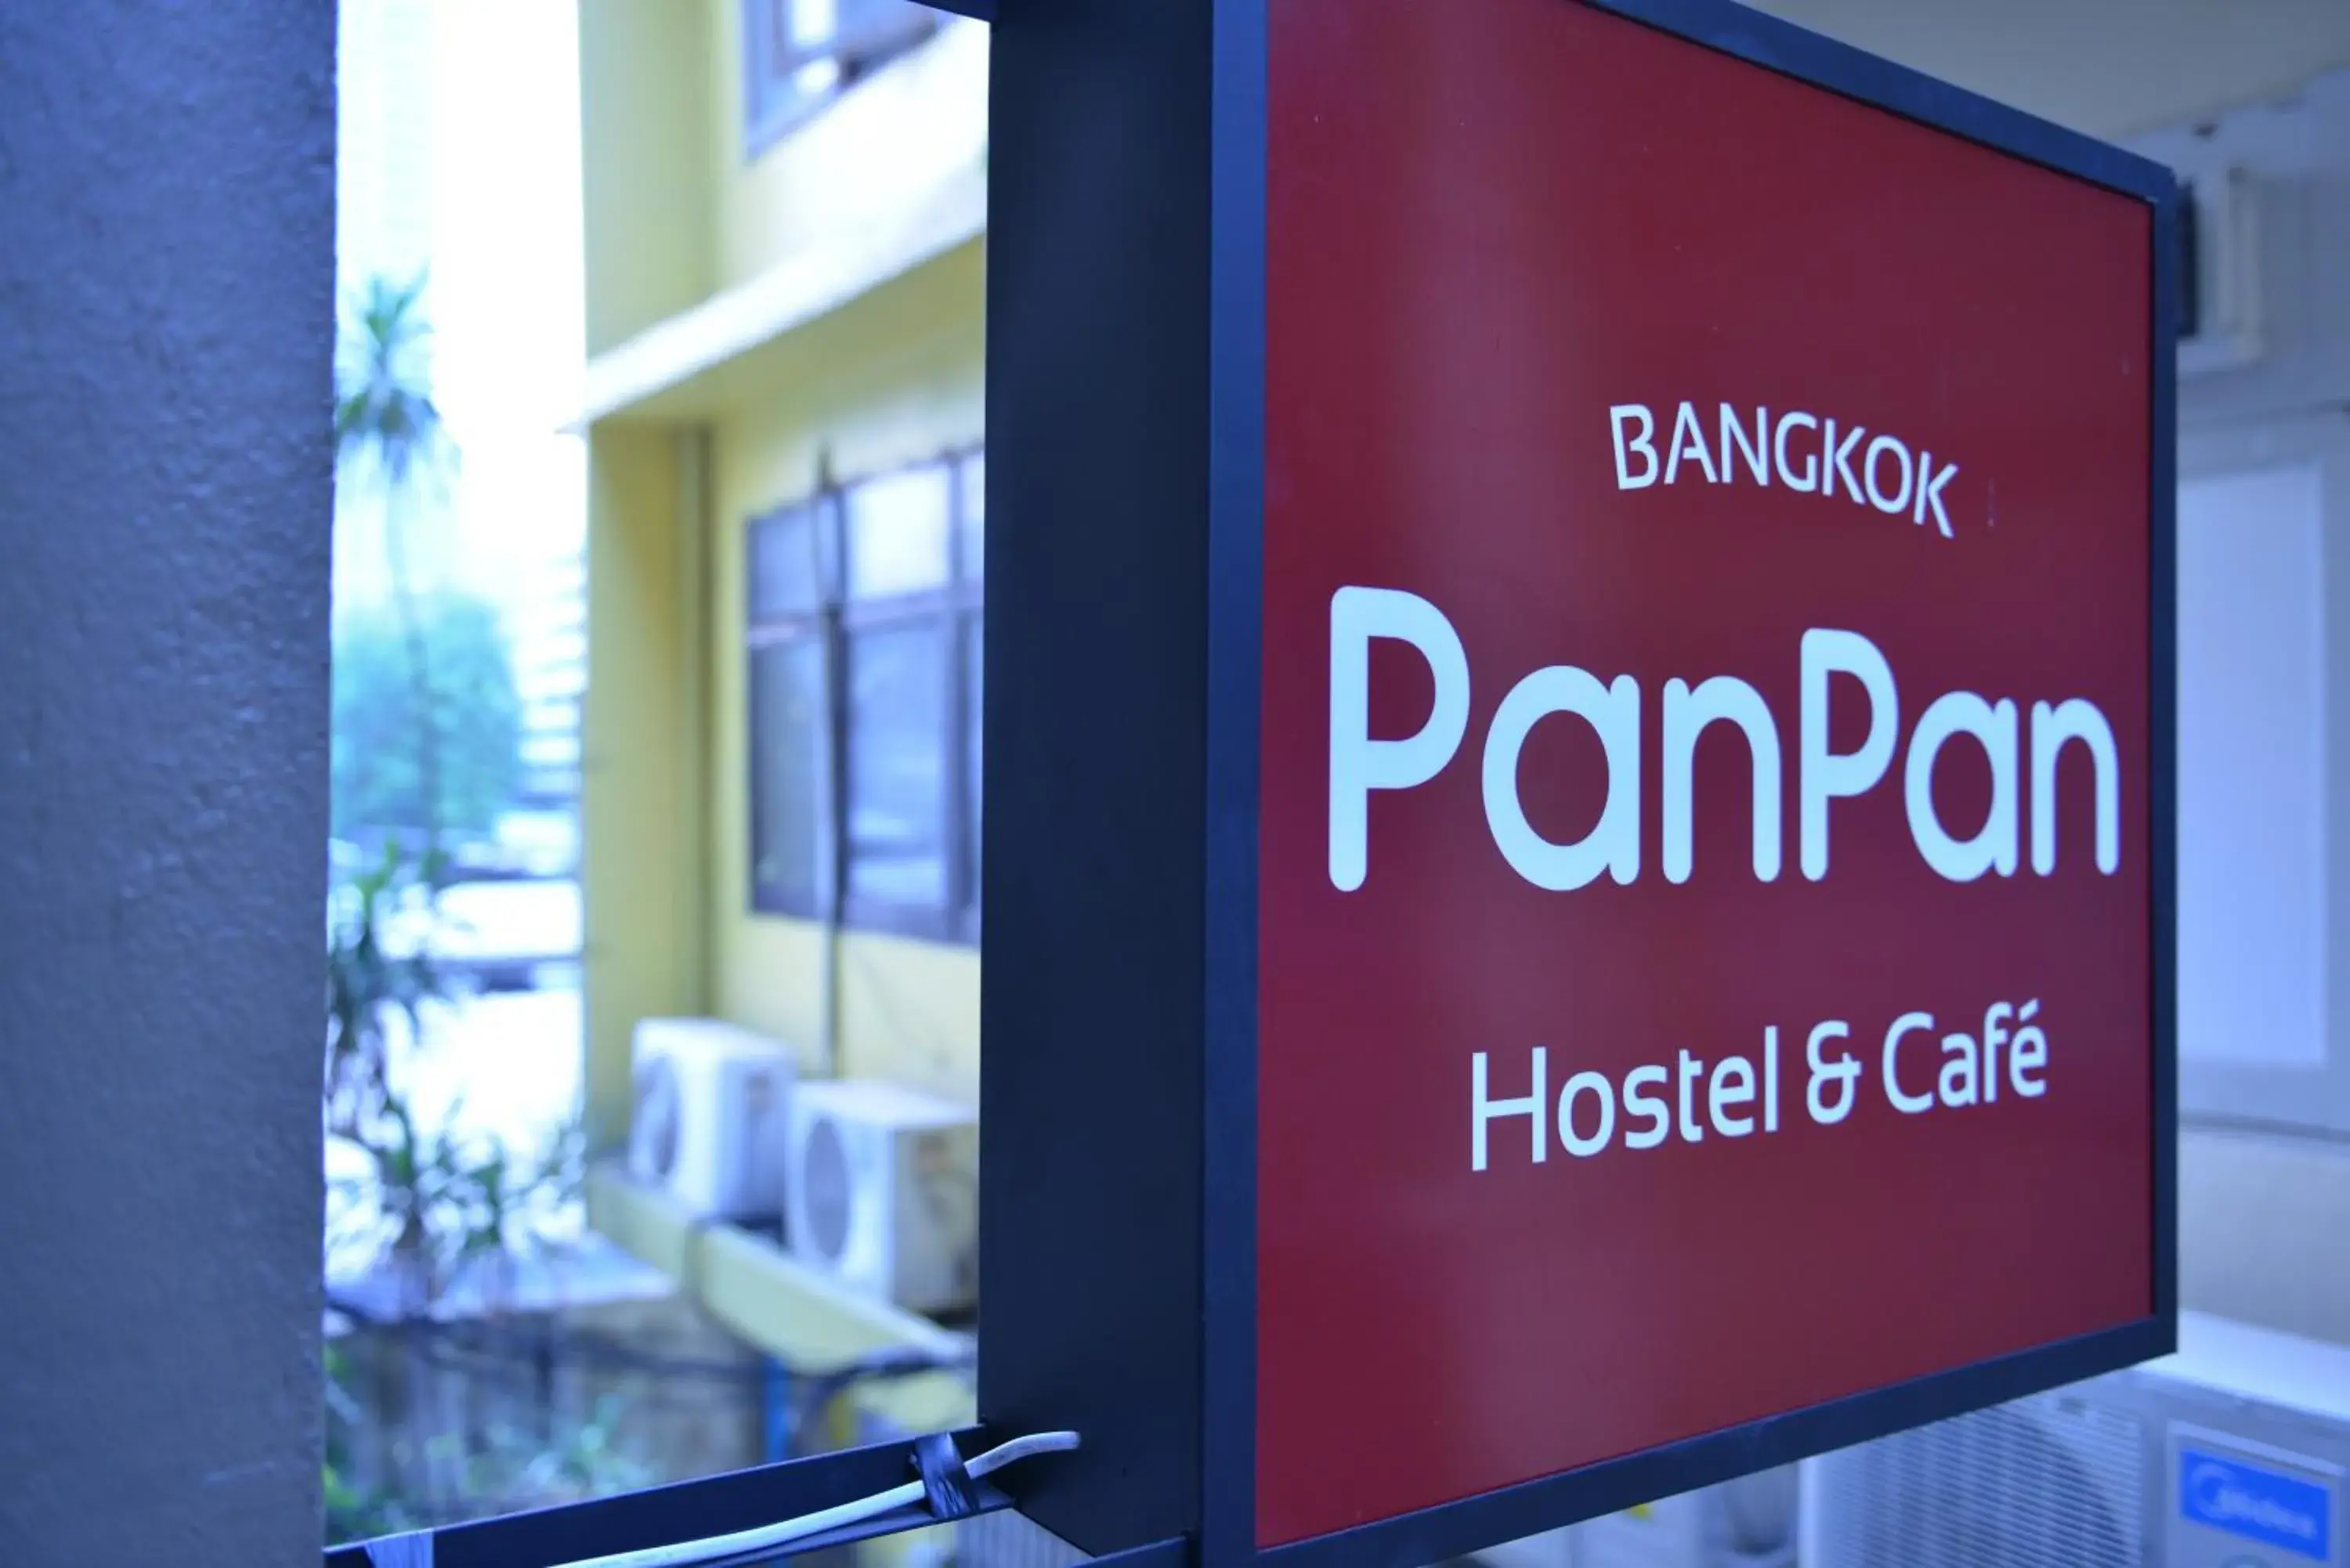 Property logo or sign in Panpan Hostel Bangkok